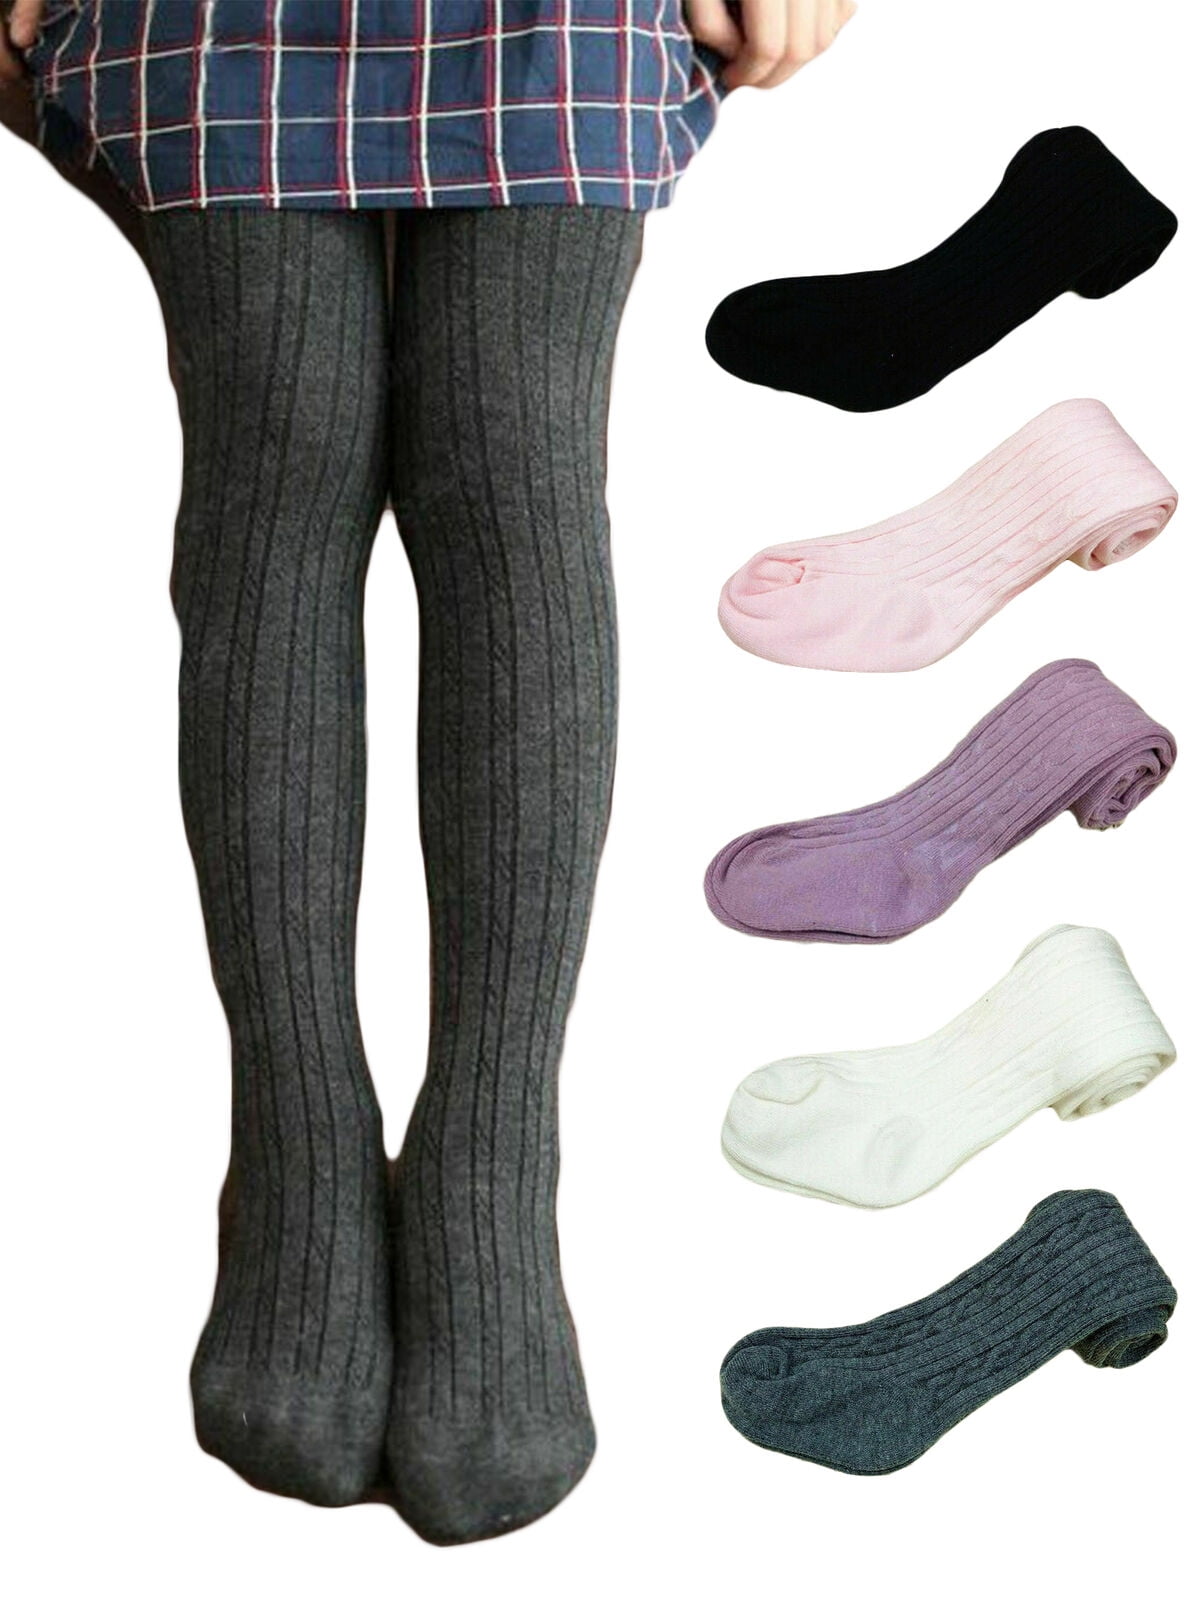 American Trends Baby Leggings Stocking Toddler Girl Socks Tights for Baby Girls Kids Winter Knitted Leggings 